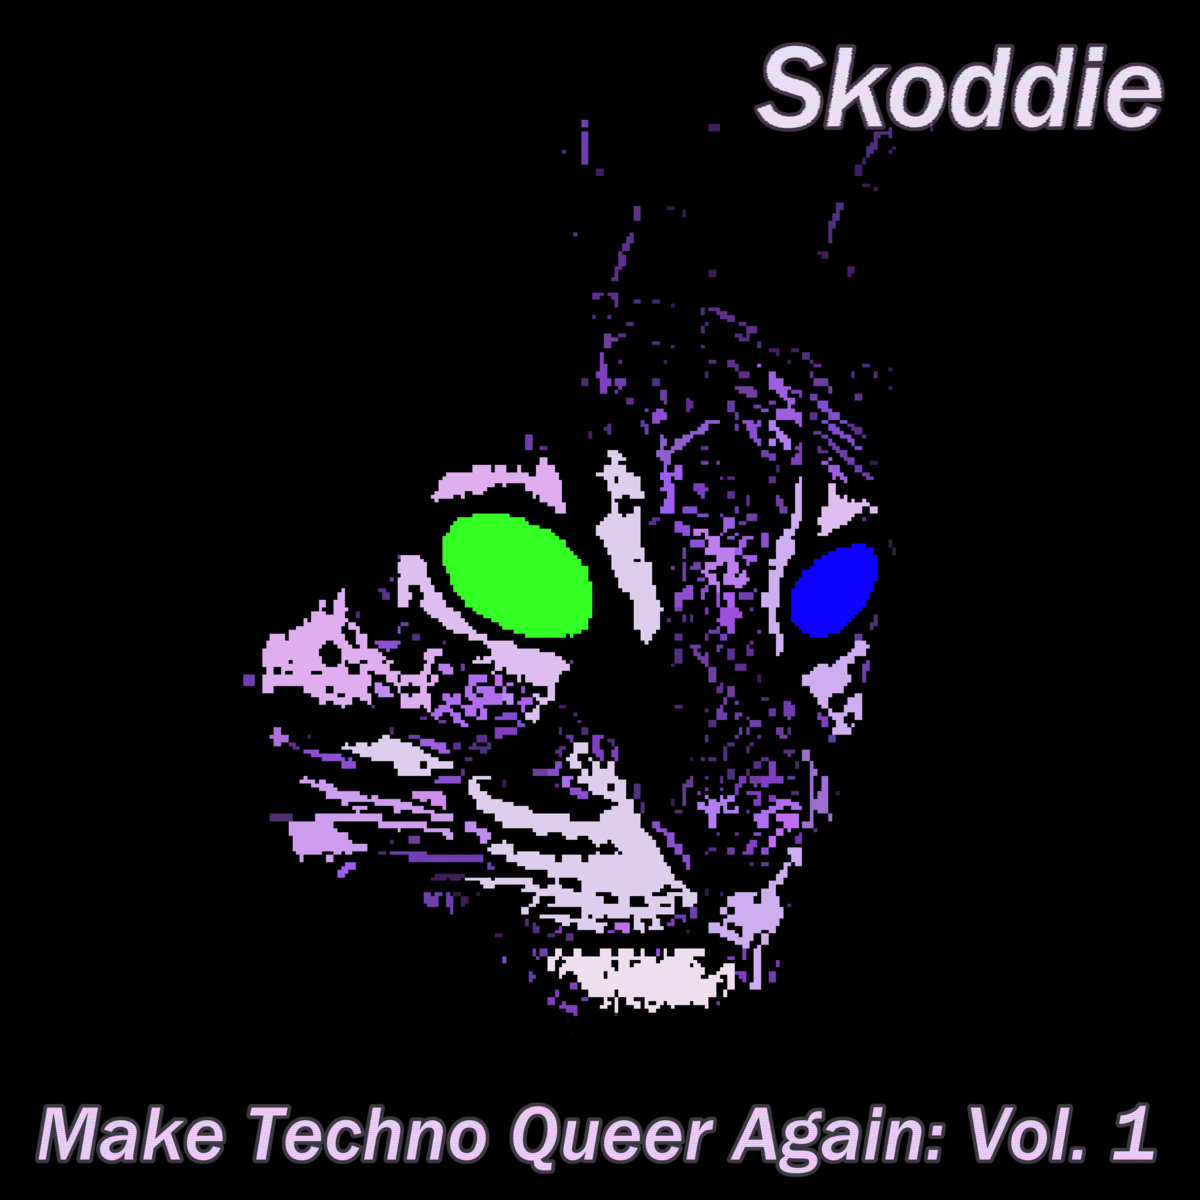 Make Techno Queer Again: Vol. 1